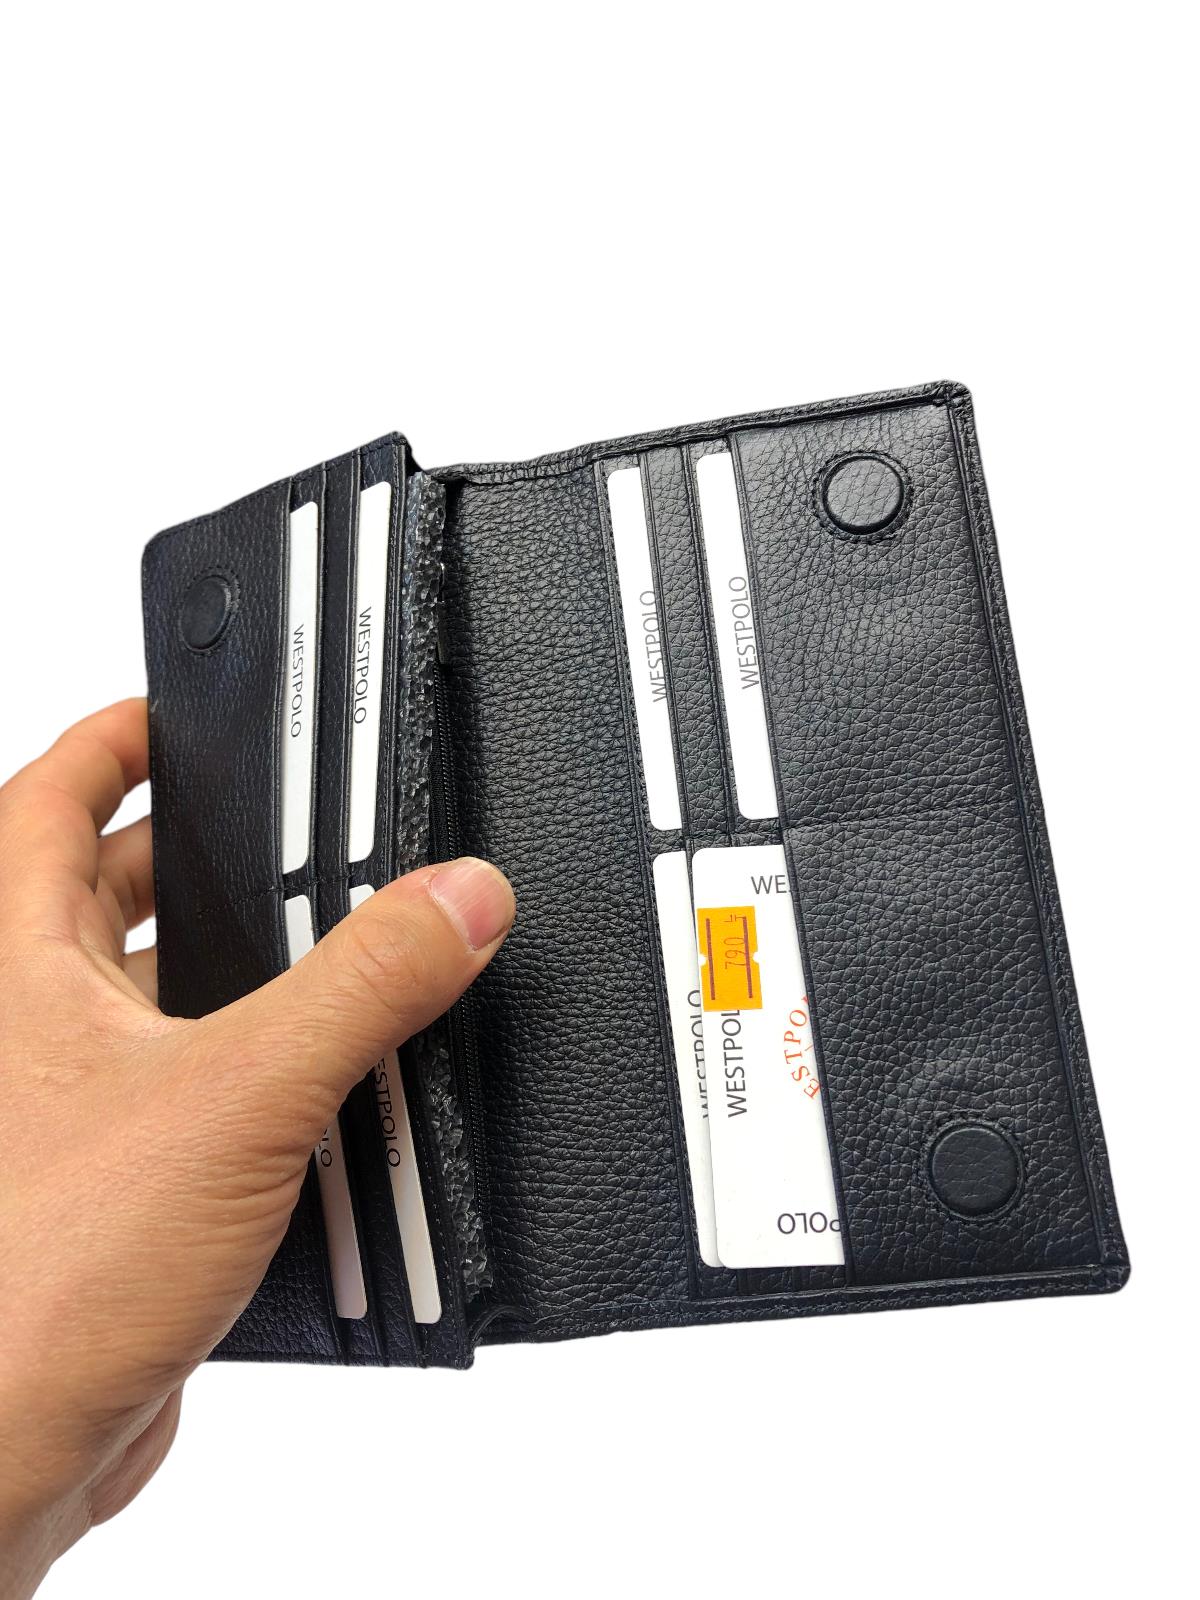 Hakiki deri tefonlu cüzdan erkek cüzdanı uzun |elizabell.com.tr